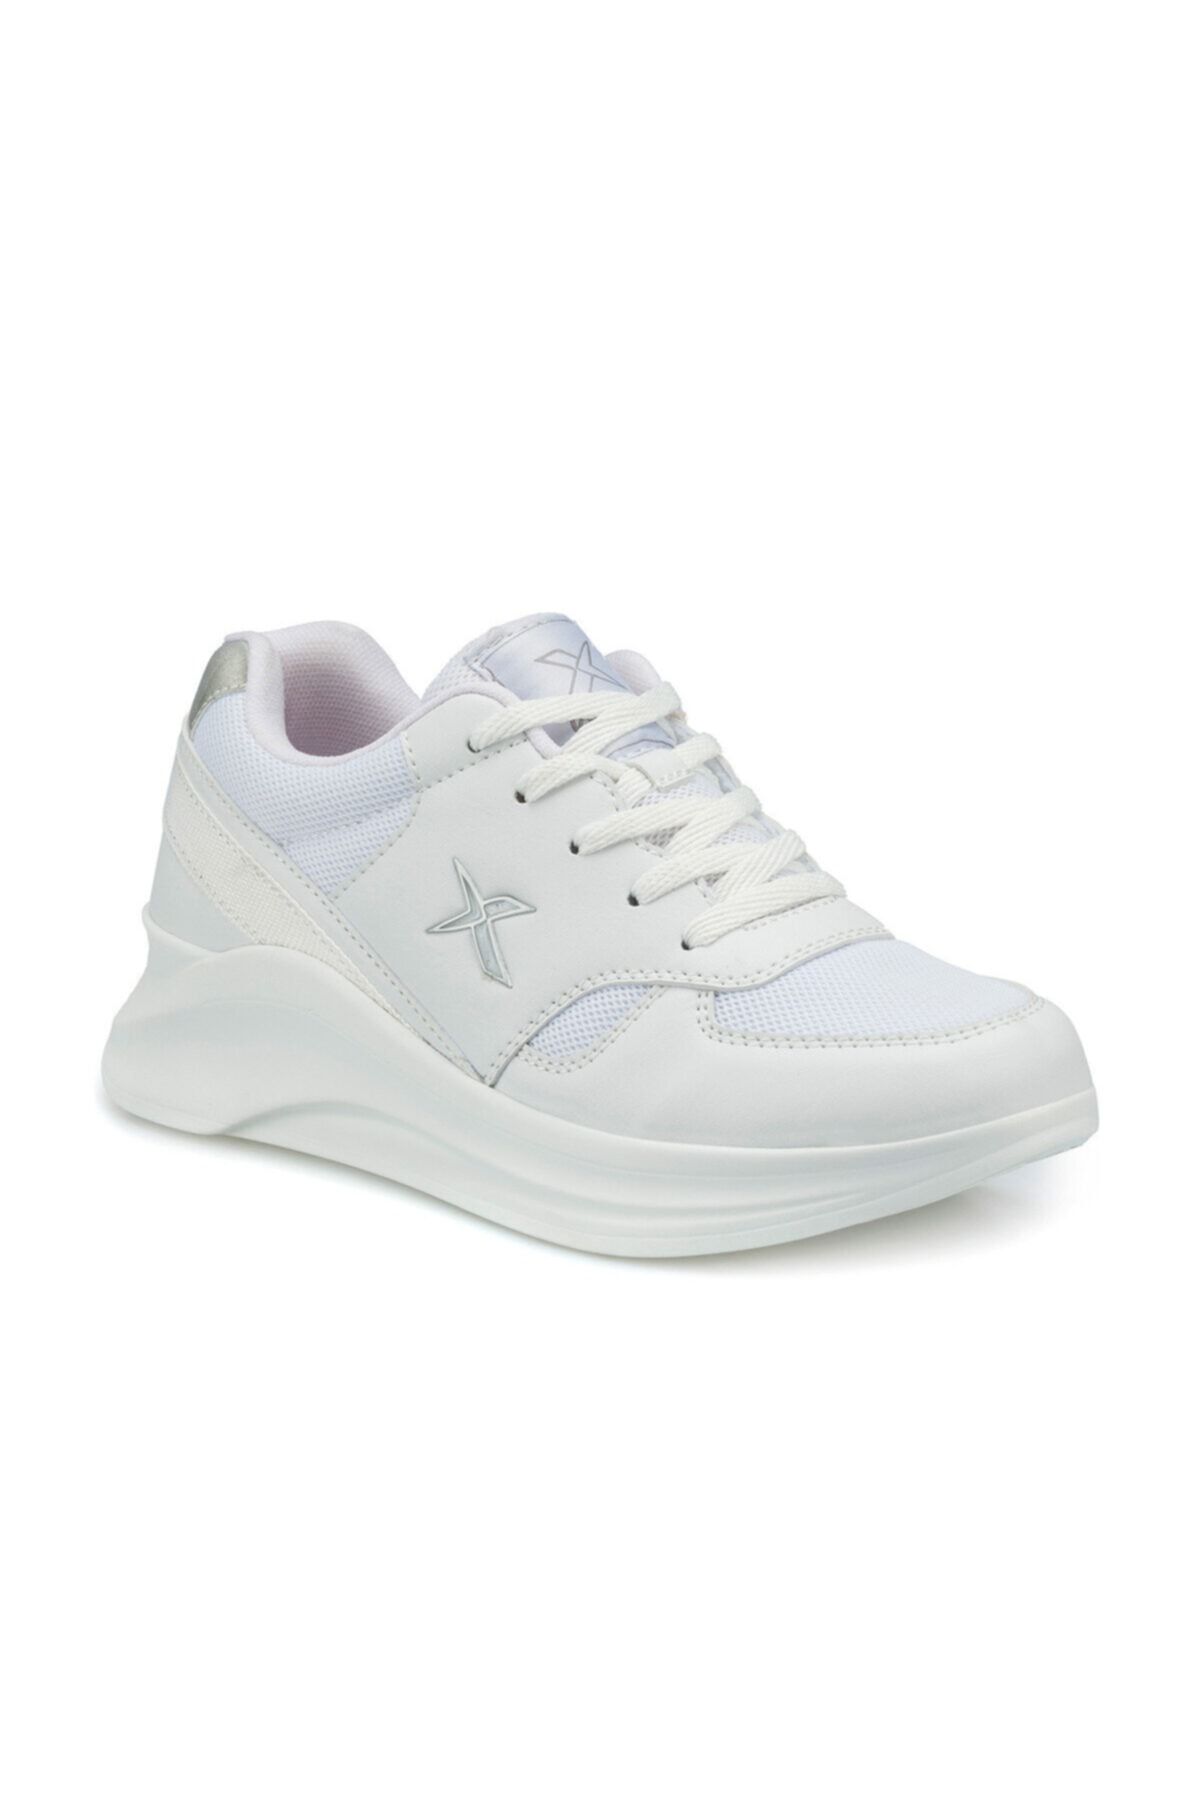 Kinetix MILO MESH W Beyaz Kadın Sneaker Ayakkabı 100484135